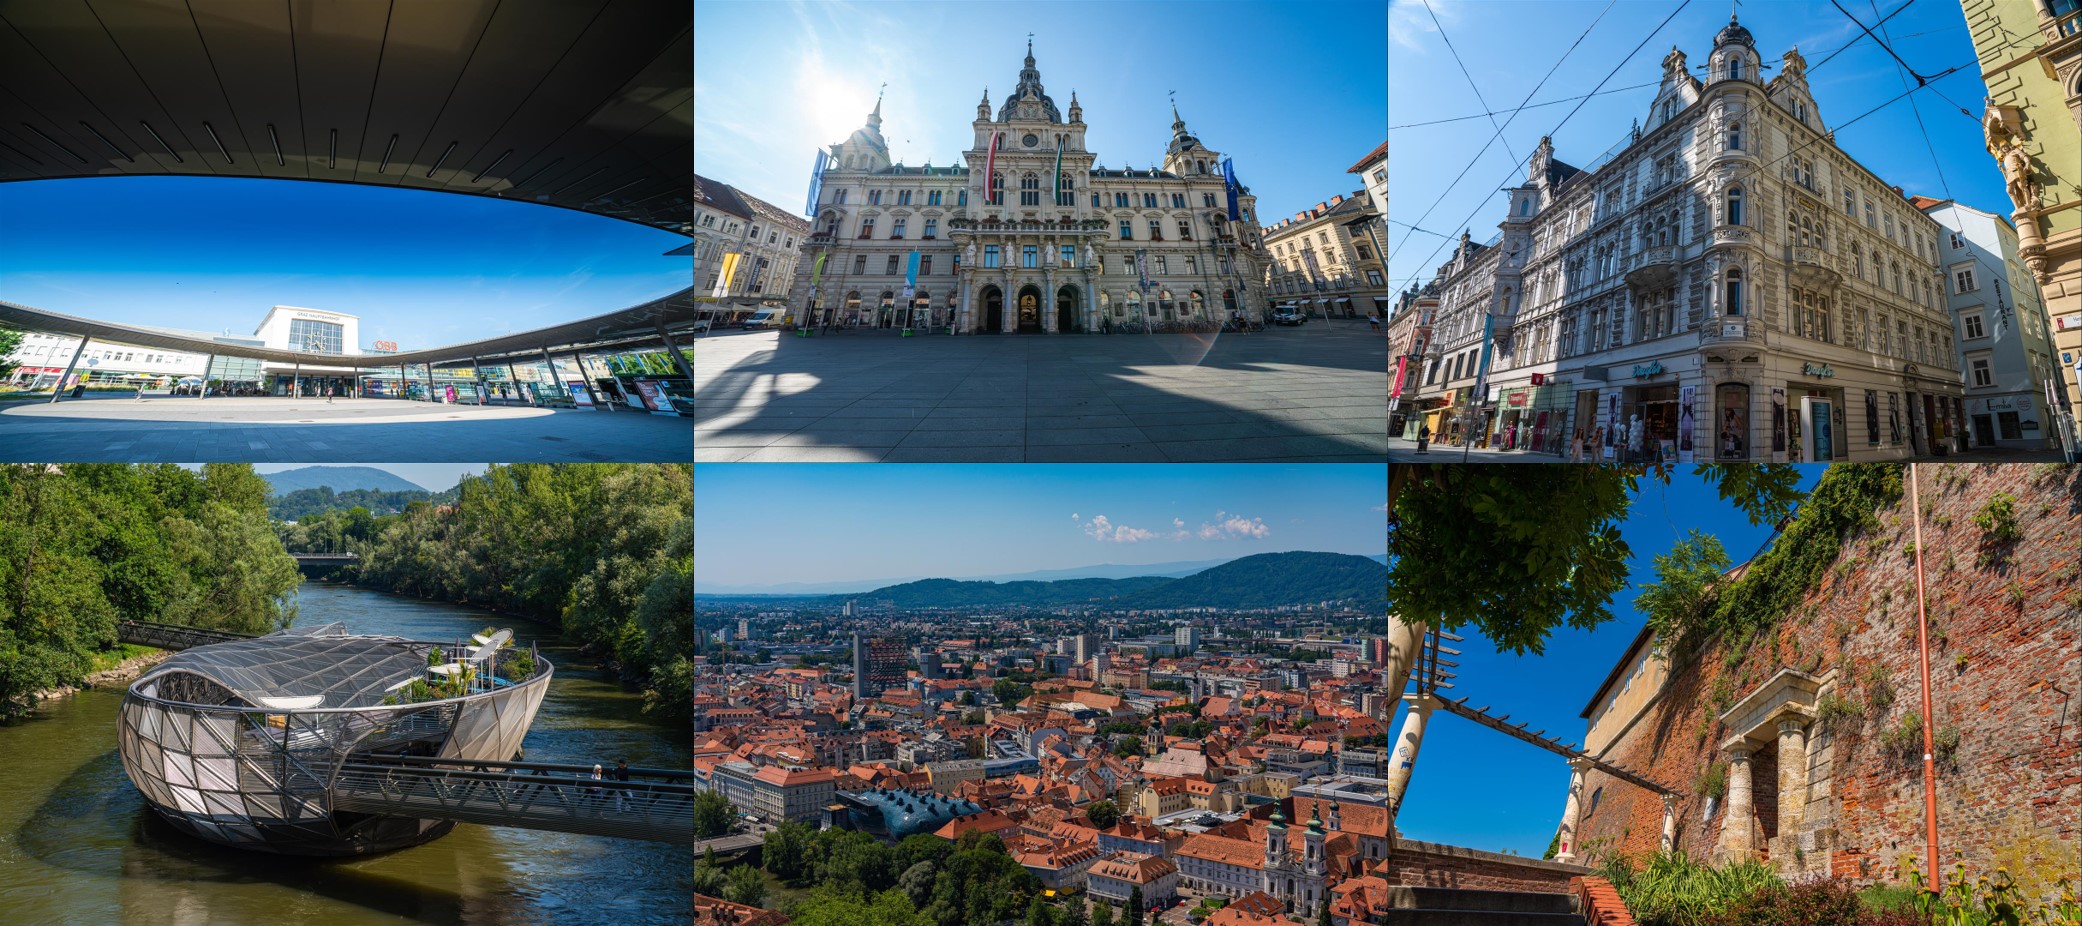 [2019 中歐攝影旅行] 奧、捷、斯、匈 14 天攝影旅行、路線、景點資訊整理